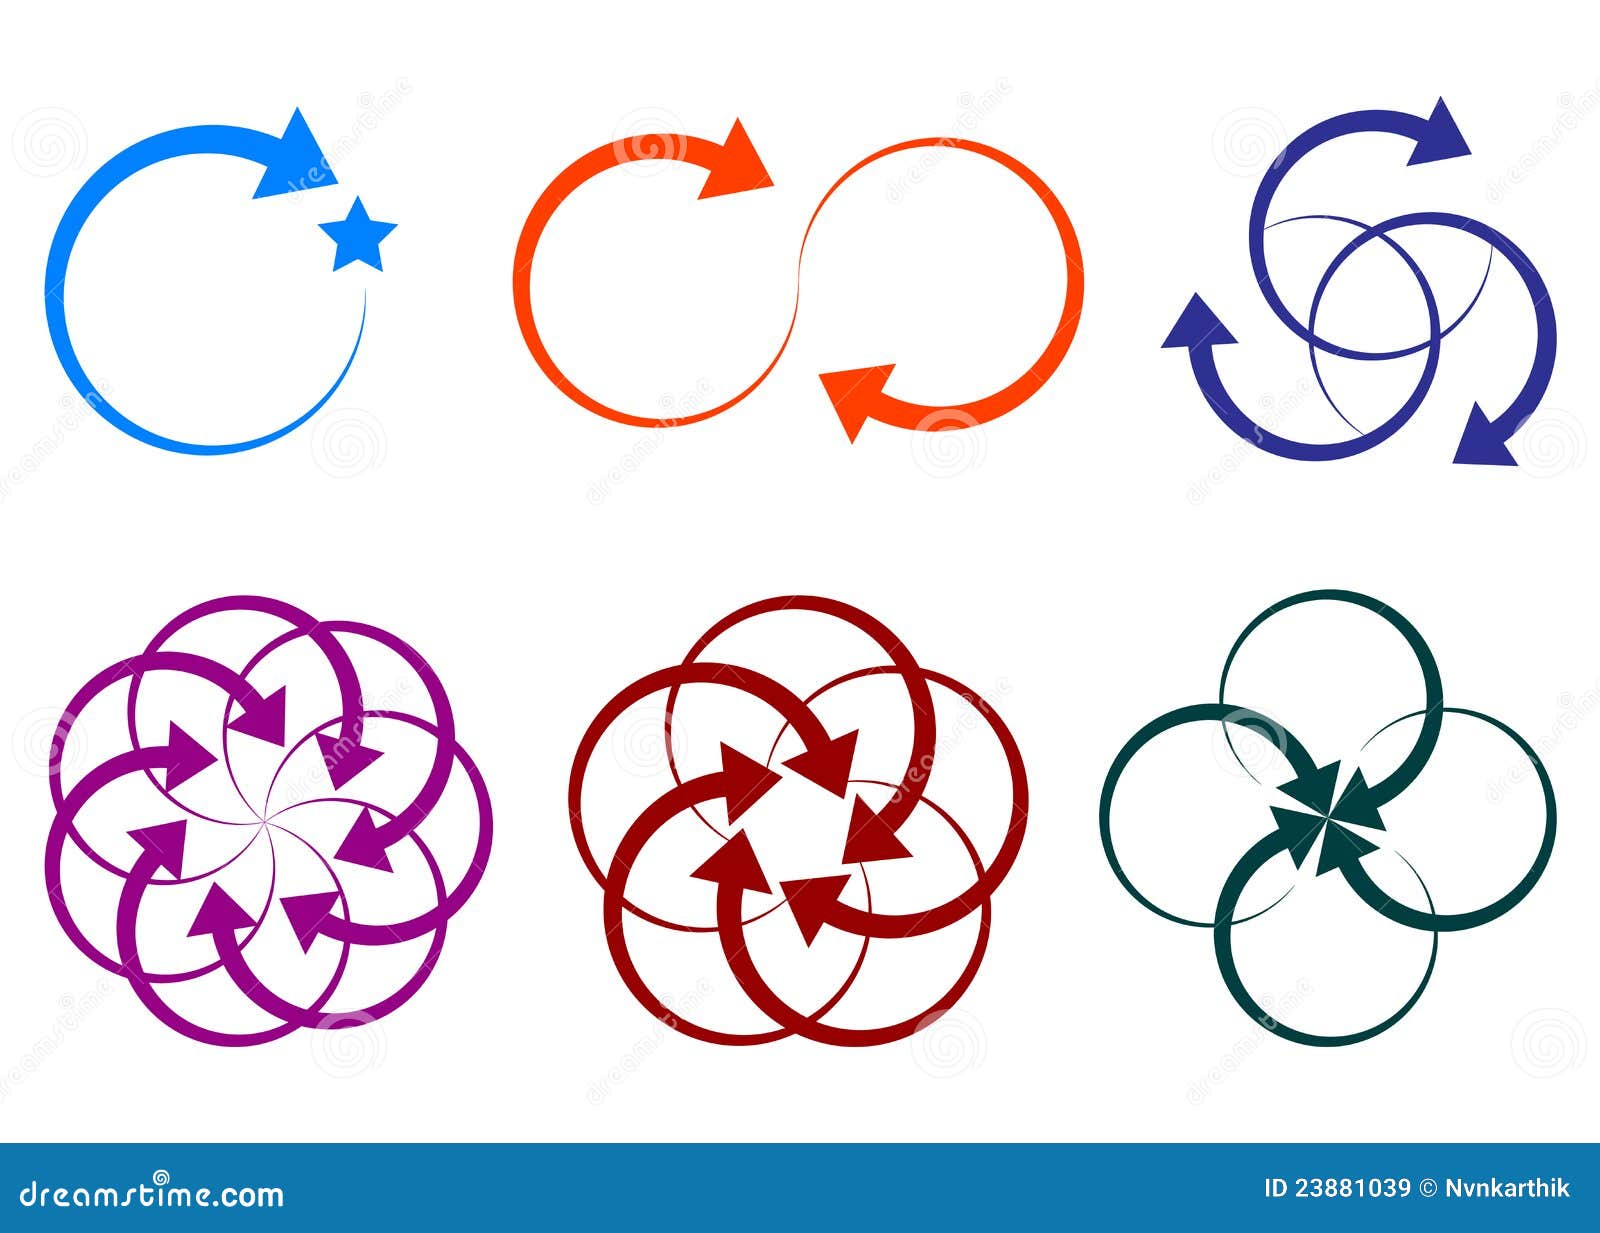 arrow  logos